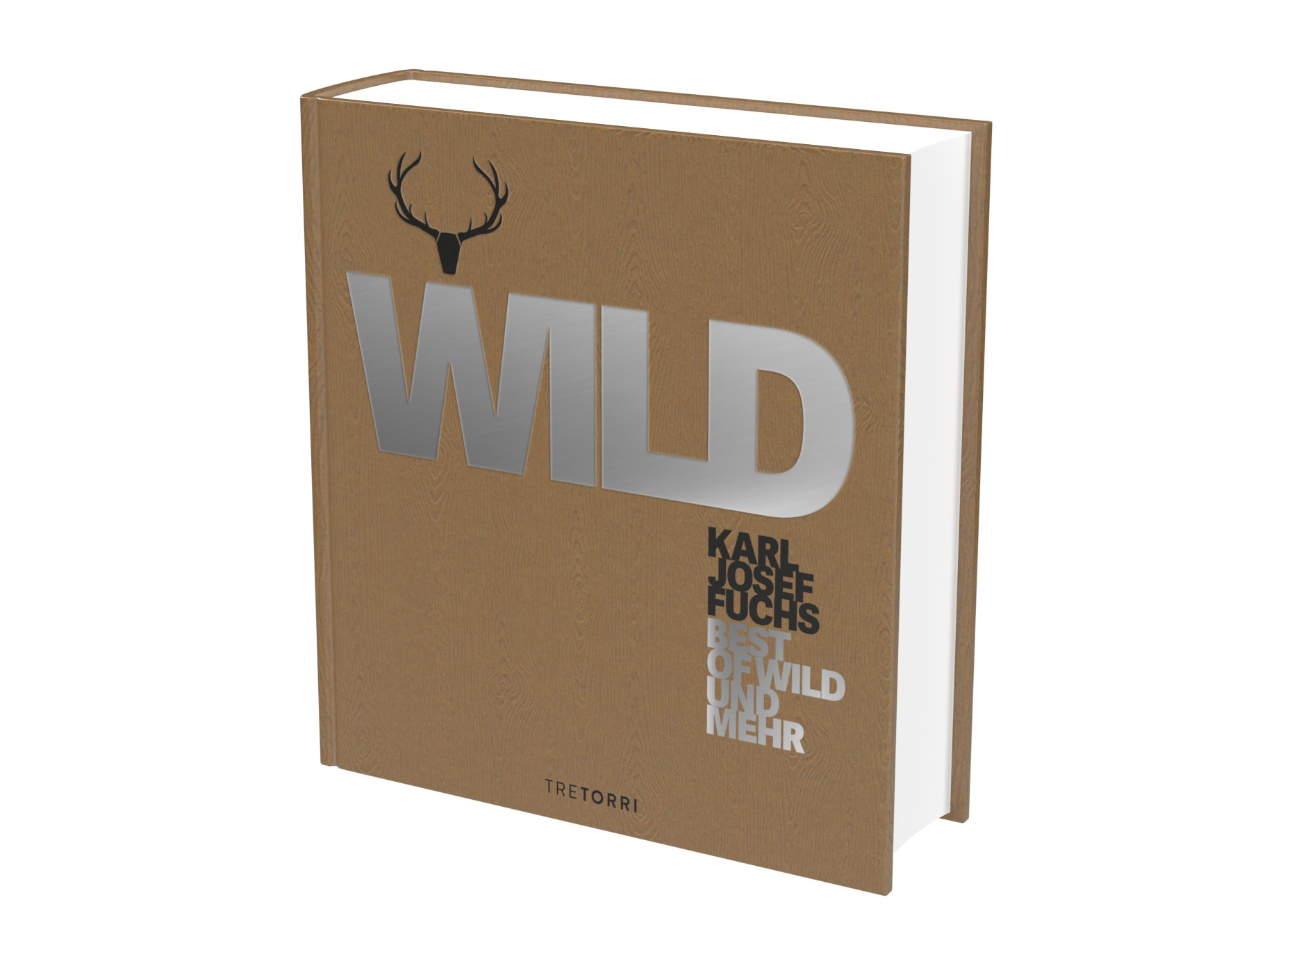 WILD - Best of Wild & mehr Fuchs, Karl-Josef